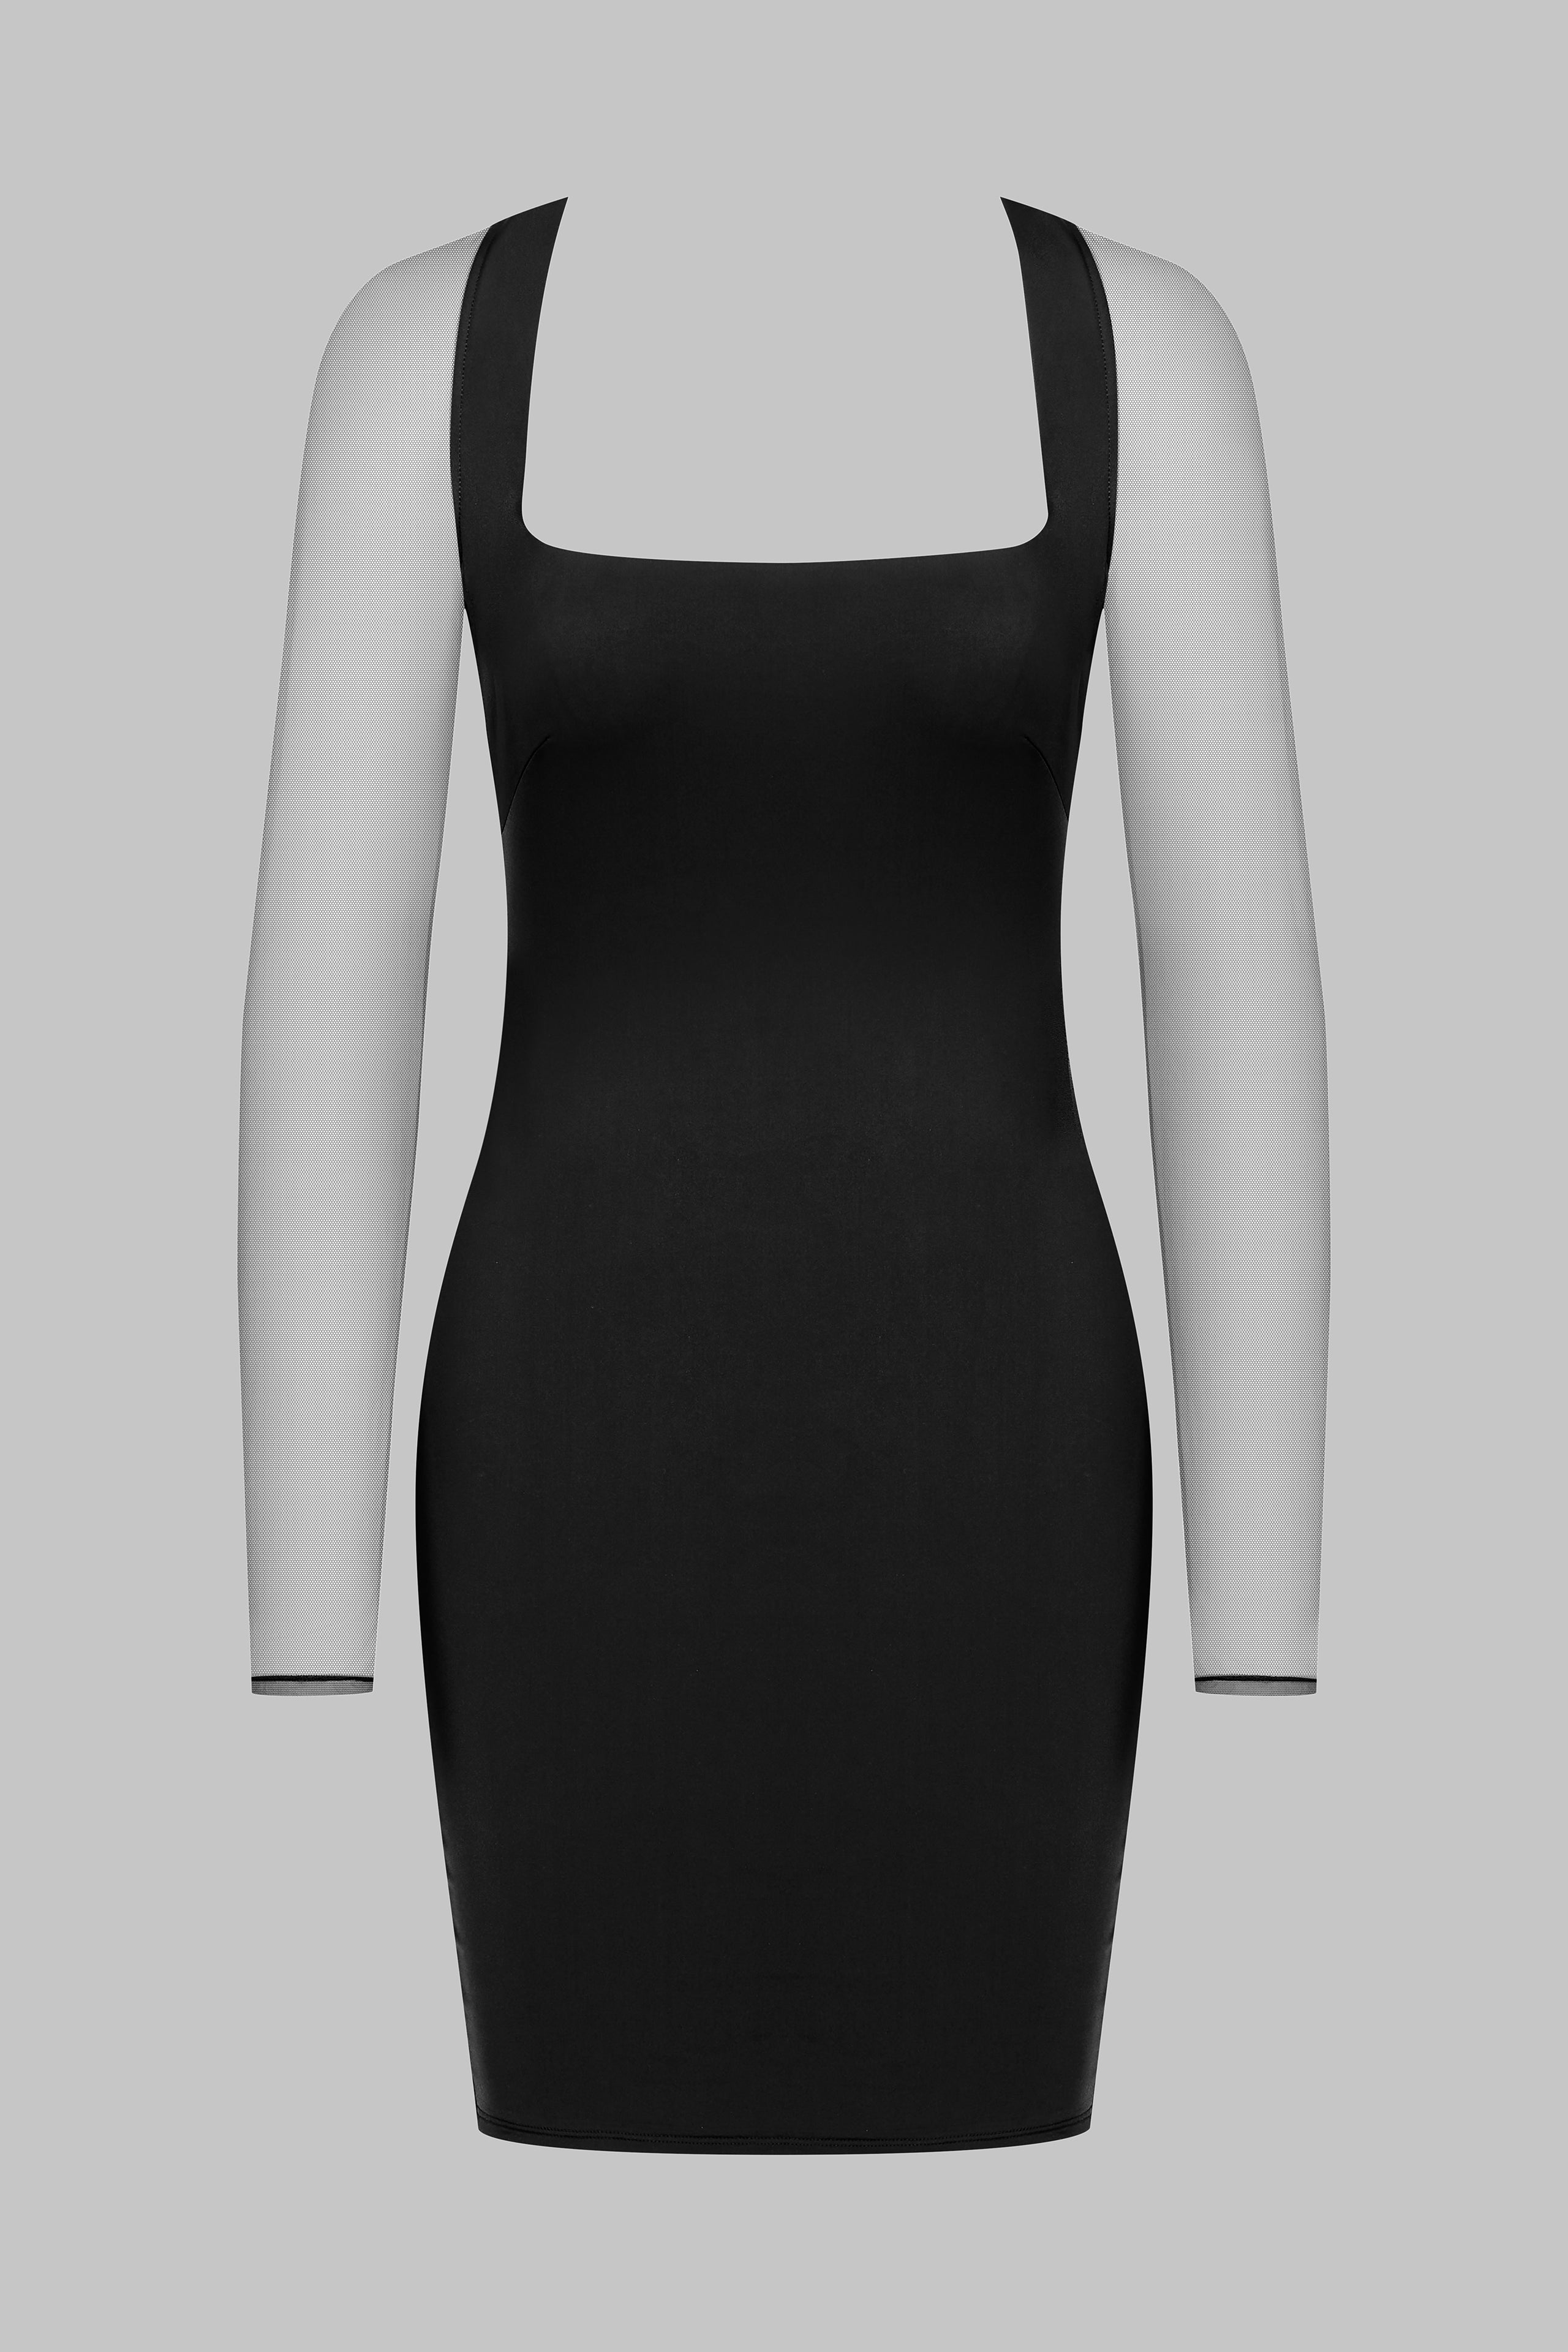 020 - Short stretch square neck dress